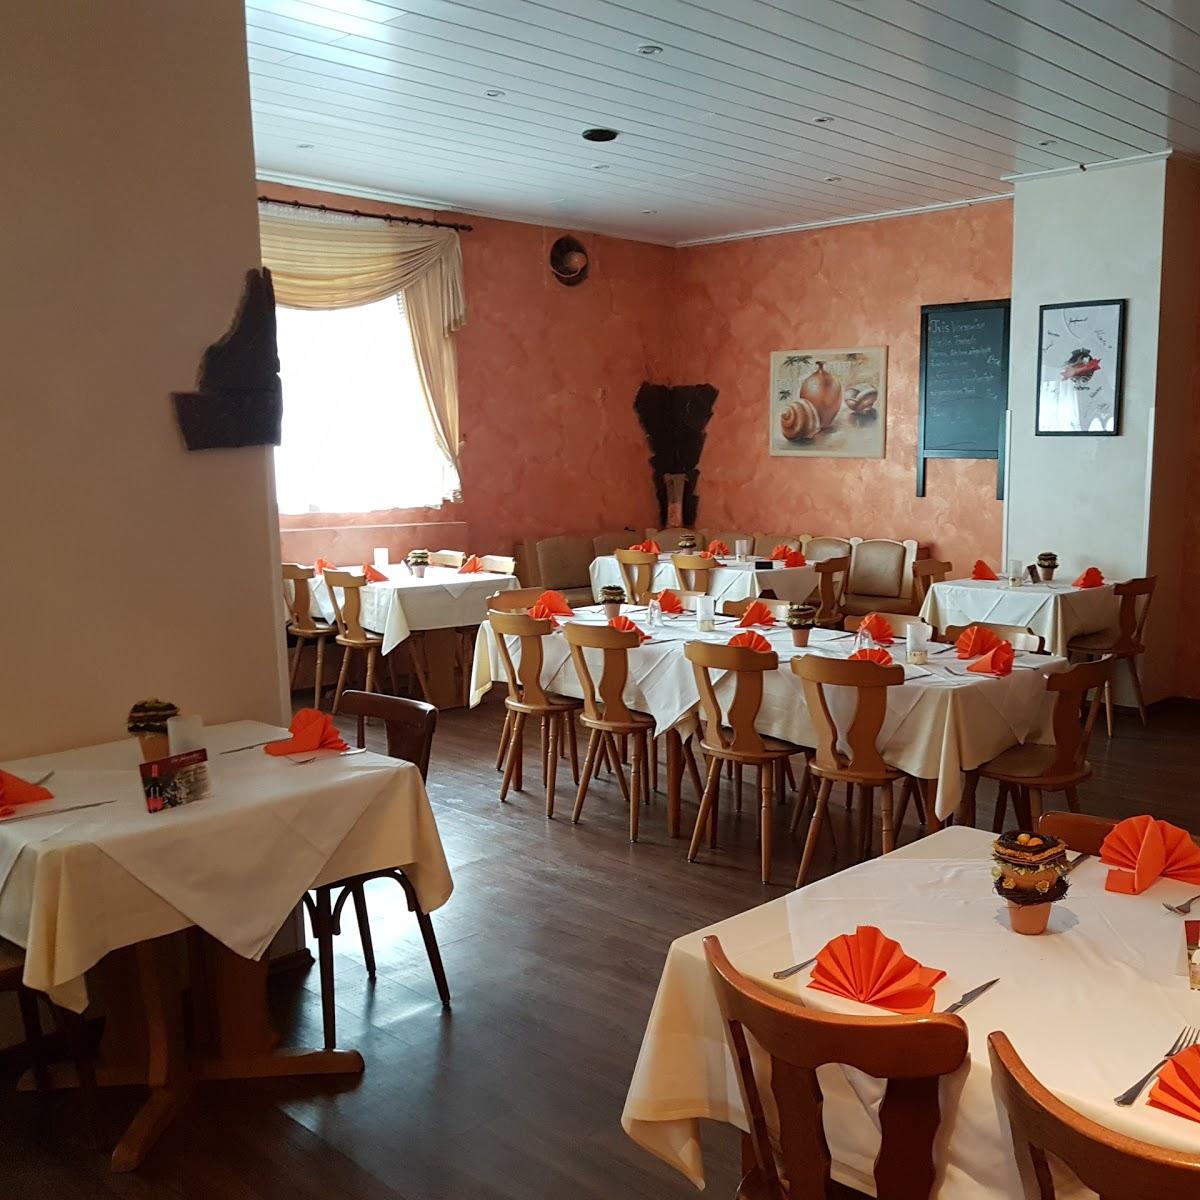 Restaurant "Agnello Bianco zum weissen Lamm" in  Rhein